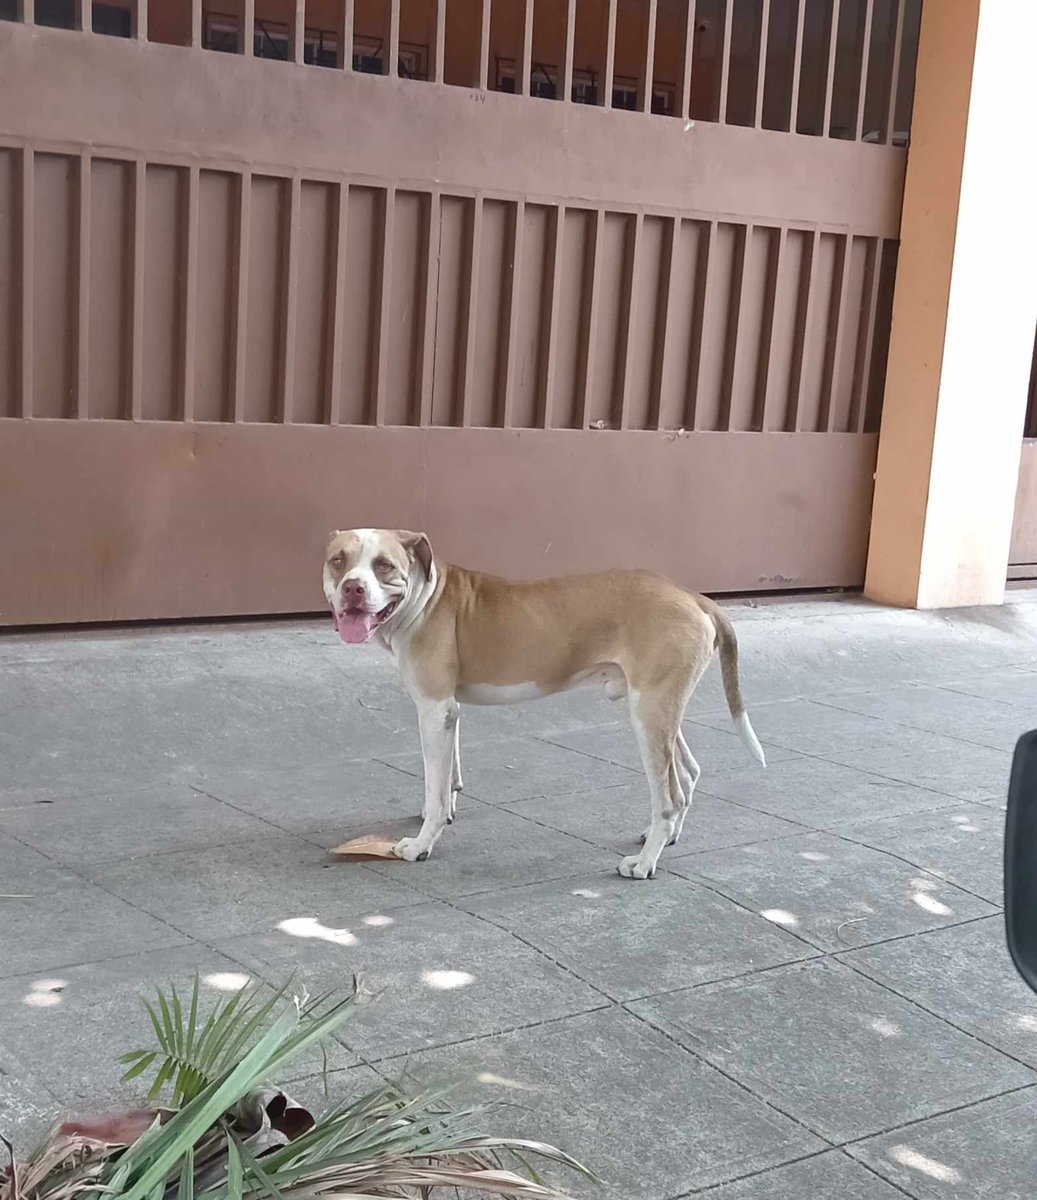 #SERVICIOSOCIAL Hoy ha aparecido este perro en la colonia jardín, en mejicanos por si a alguien se le ha extraviado Contacto 77870317